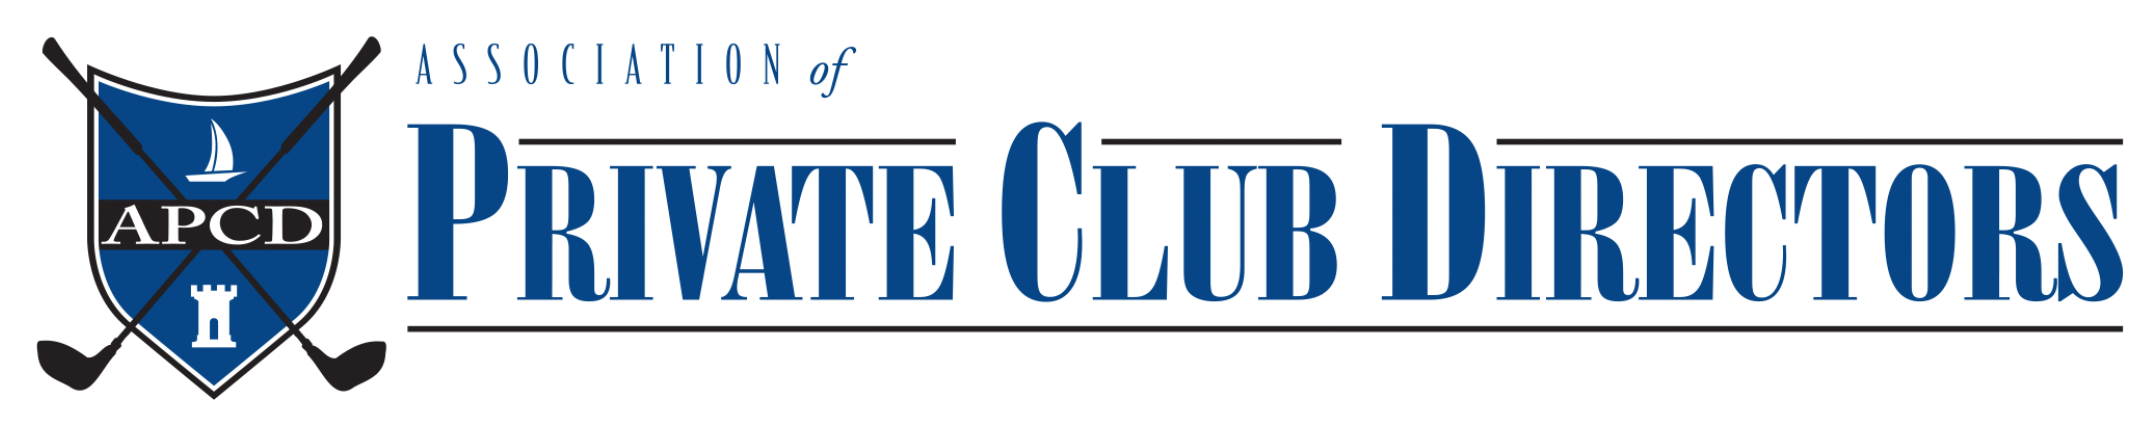 APCD - Association of Private Club Directors Logo